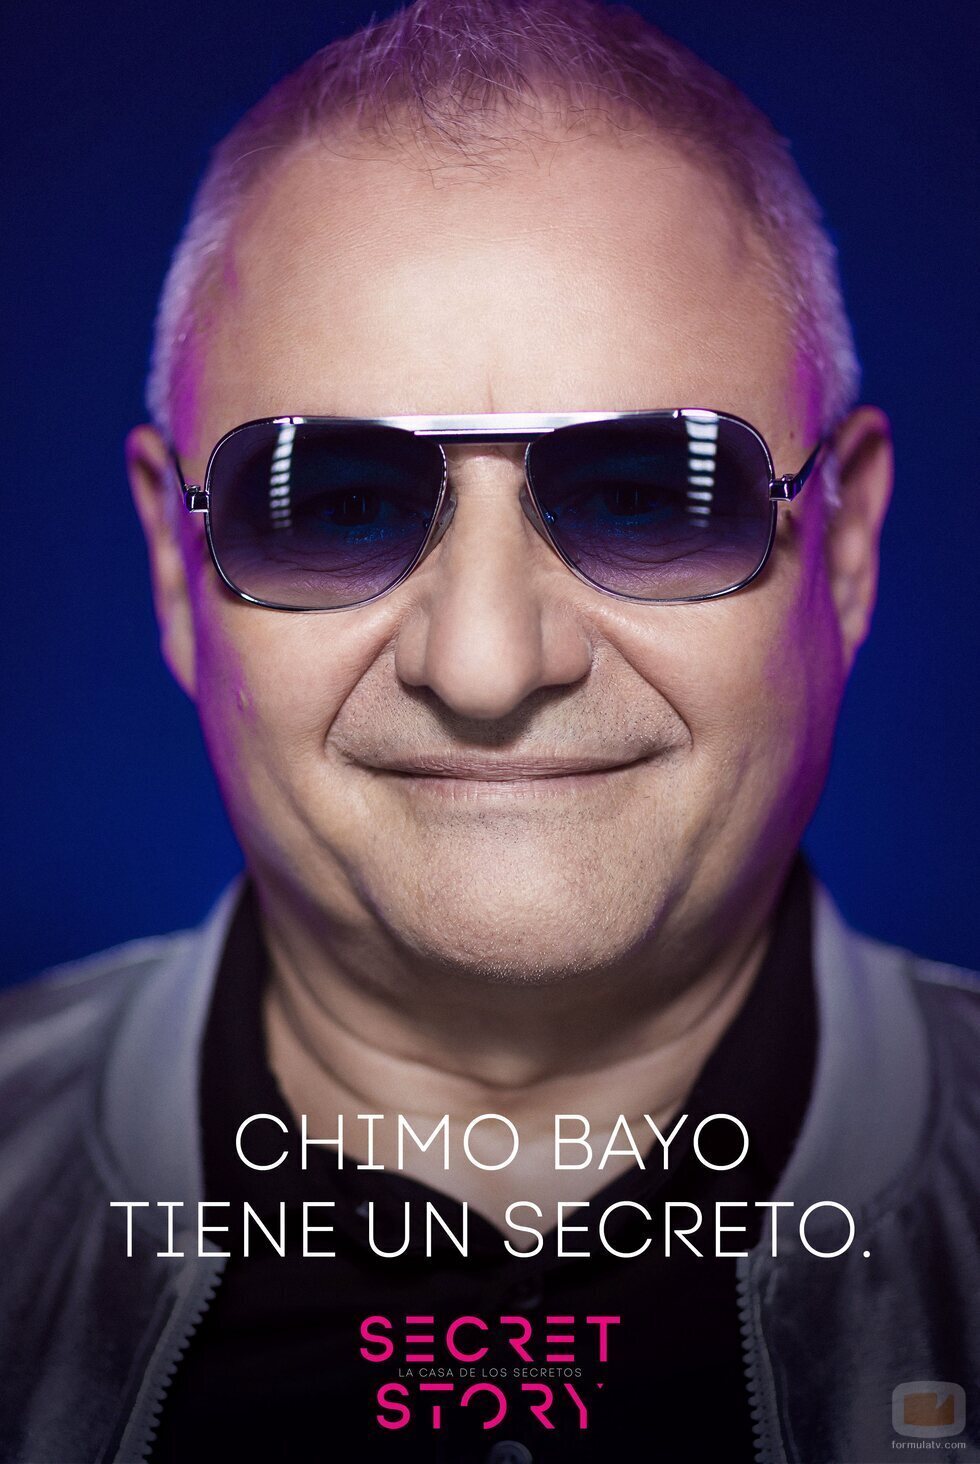 Chimo Bayo, concursante de la primera edición de 'Secret Story'